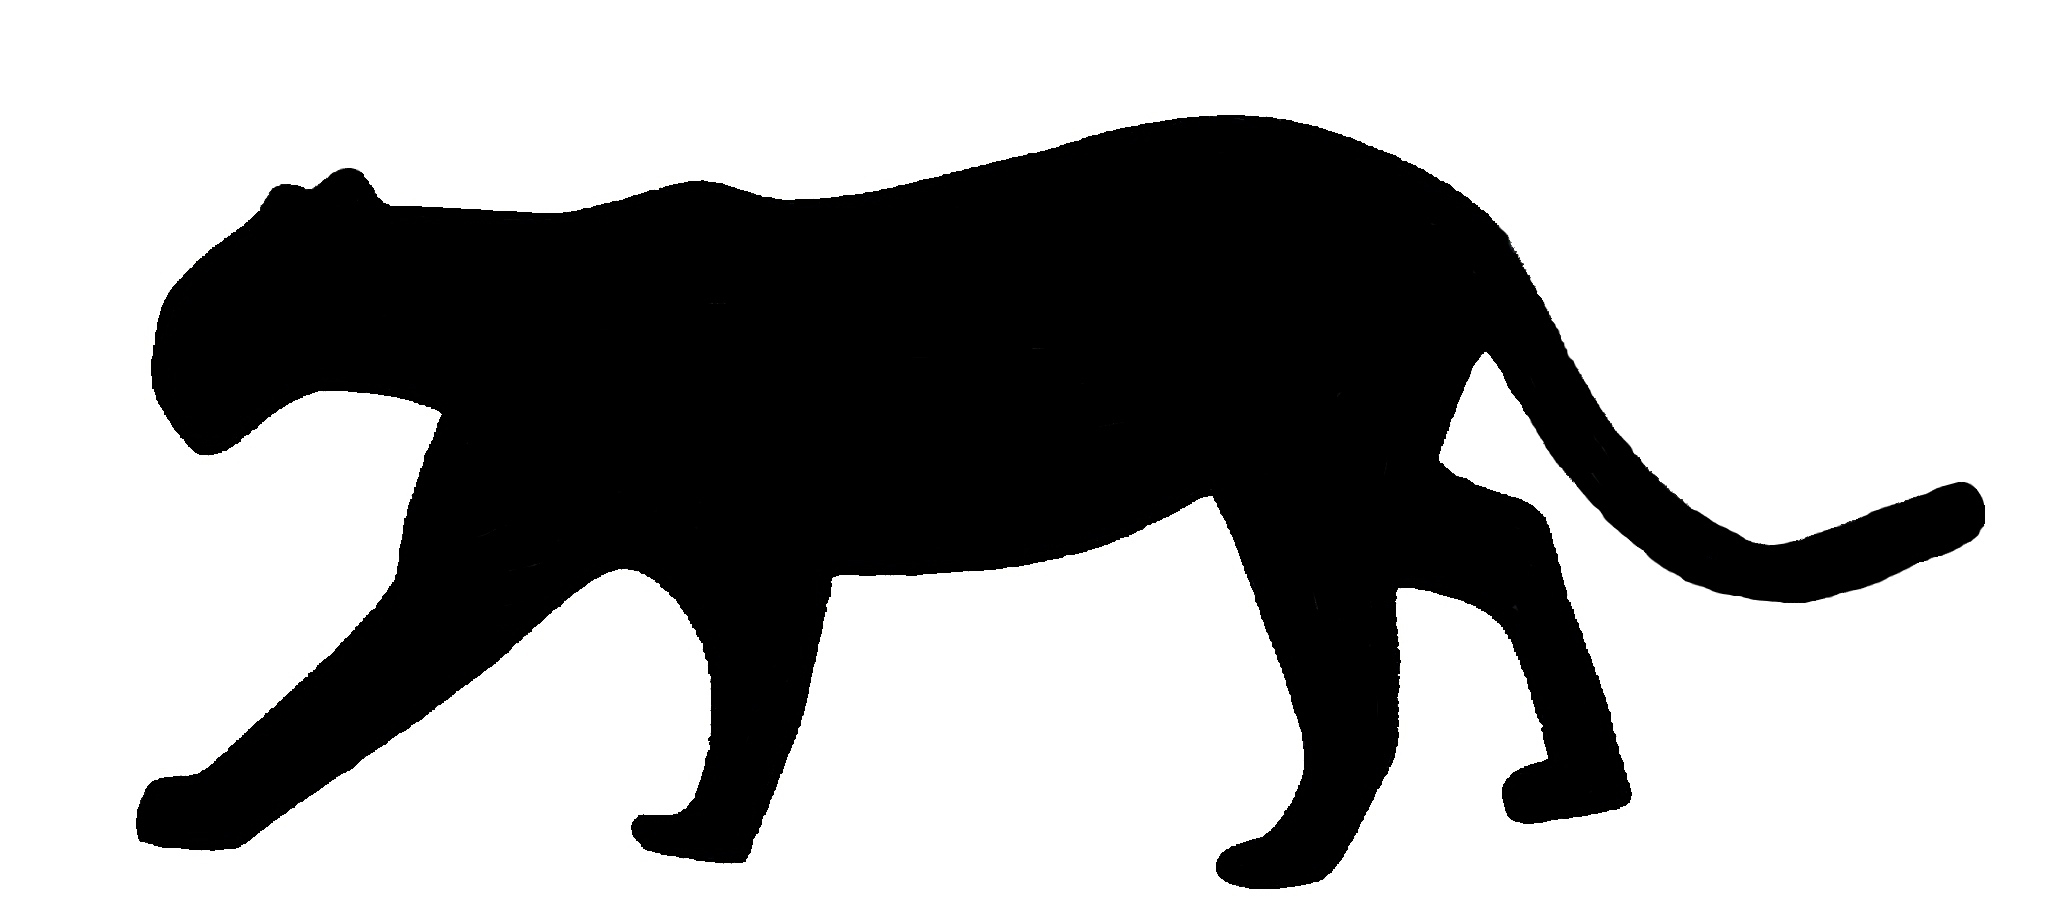 jaguar silhouette clip art - photo #4